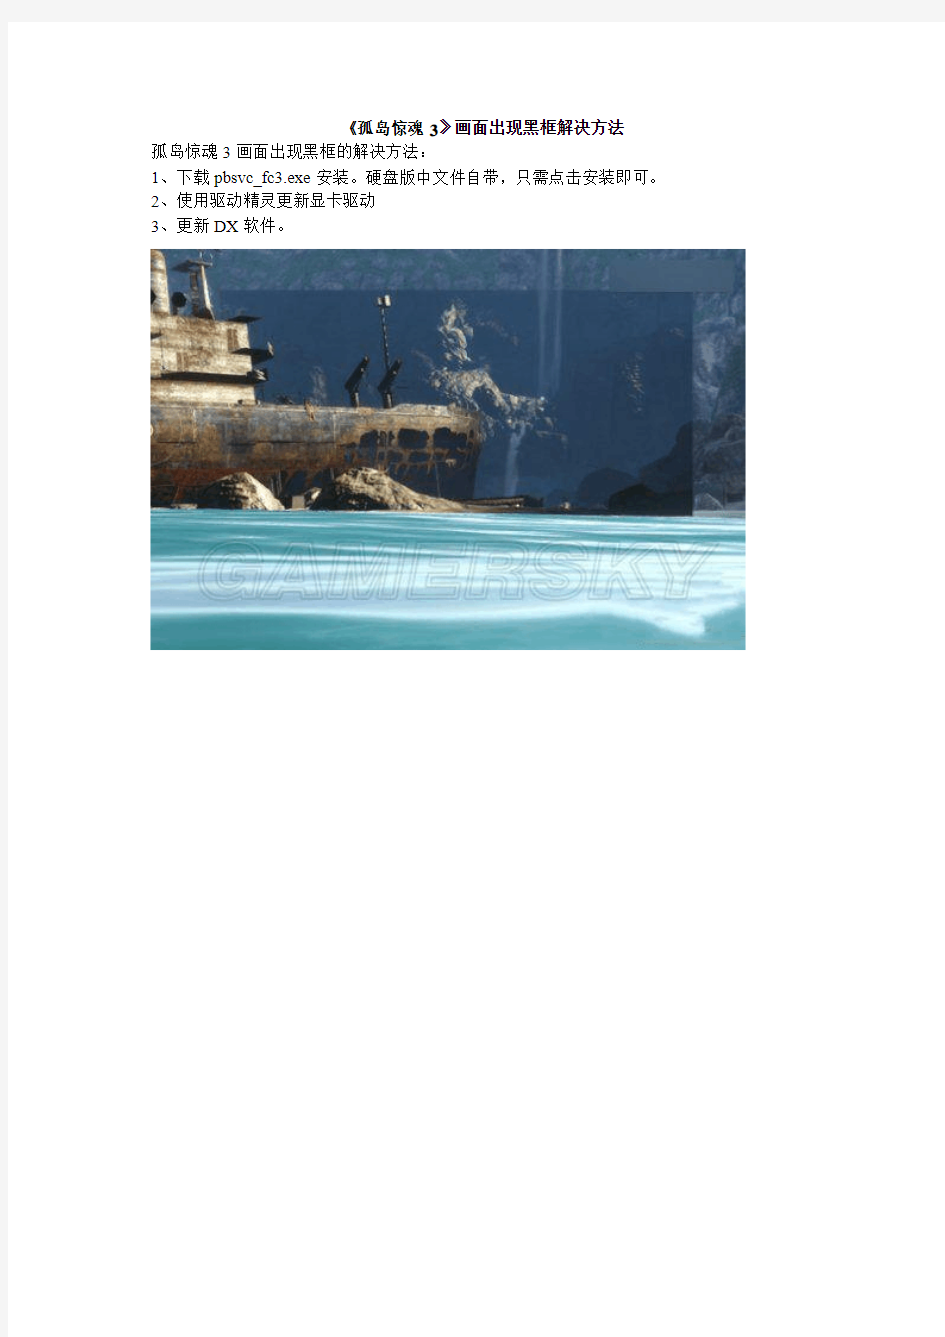 《孤岛惊魂3》画面出现黑框解决方法